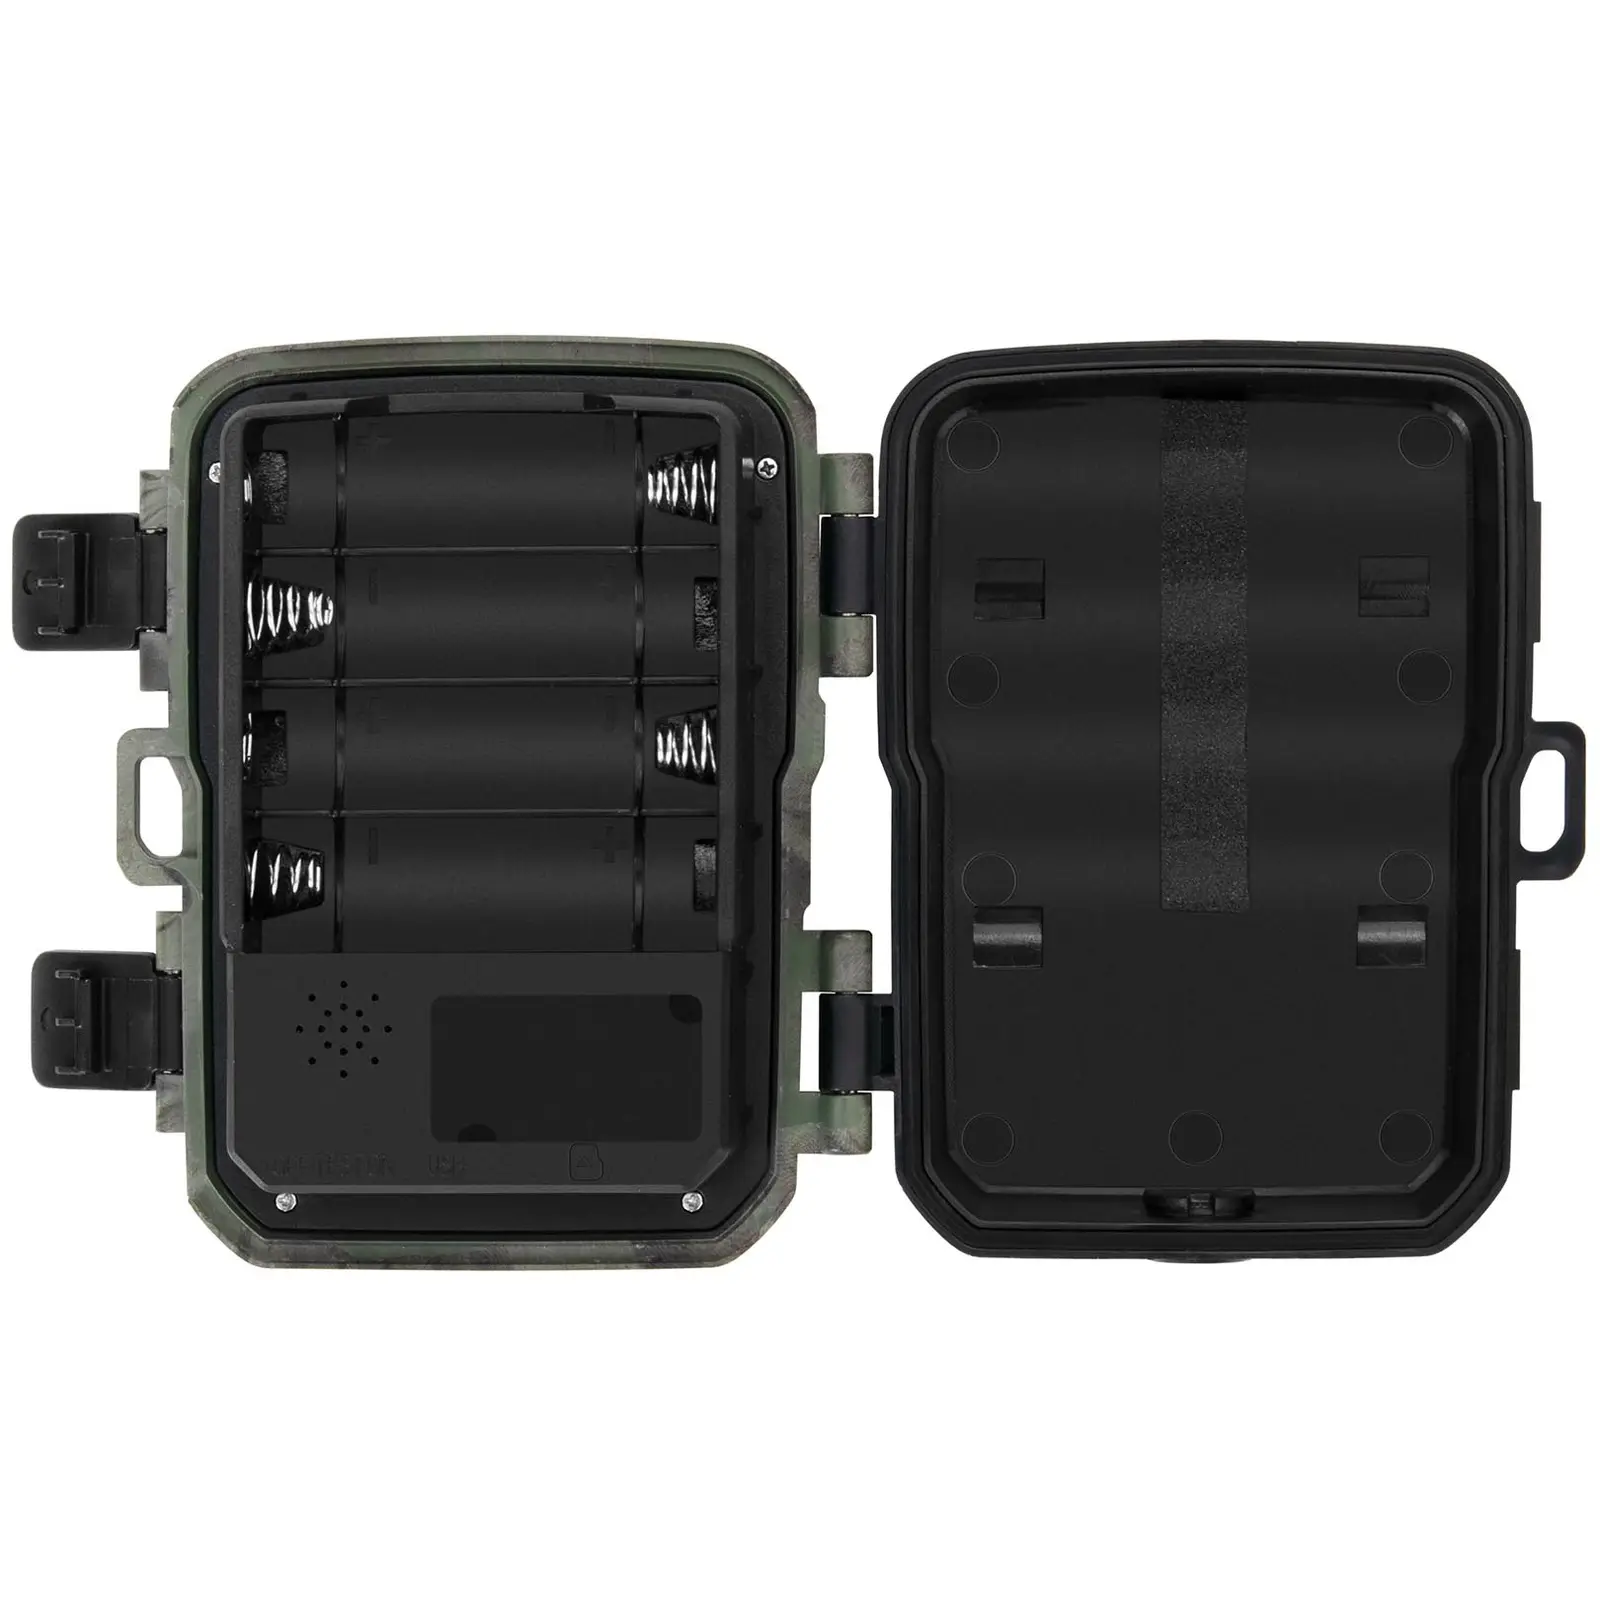 Mini Wildkamera - 5 MP - Full HD - 20 m - 1,1 s - 5